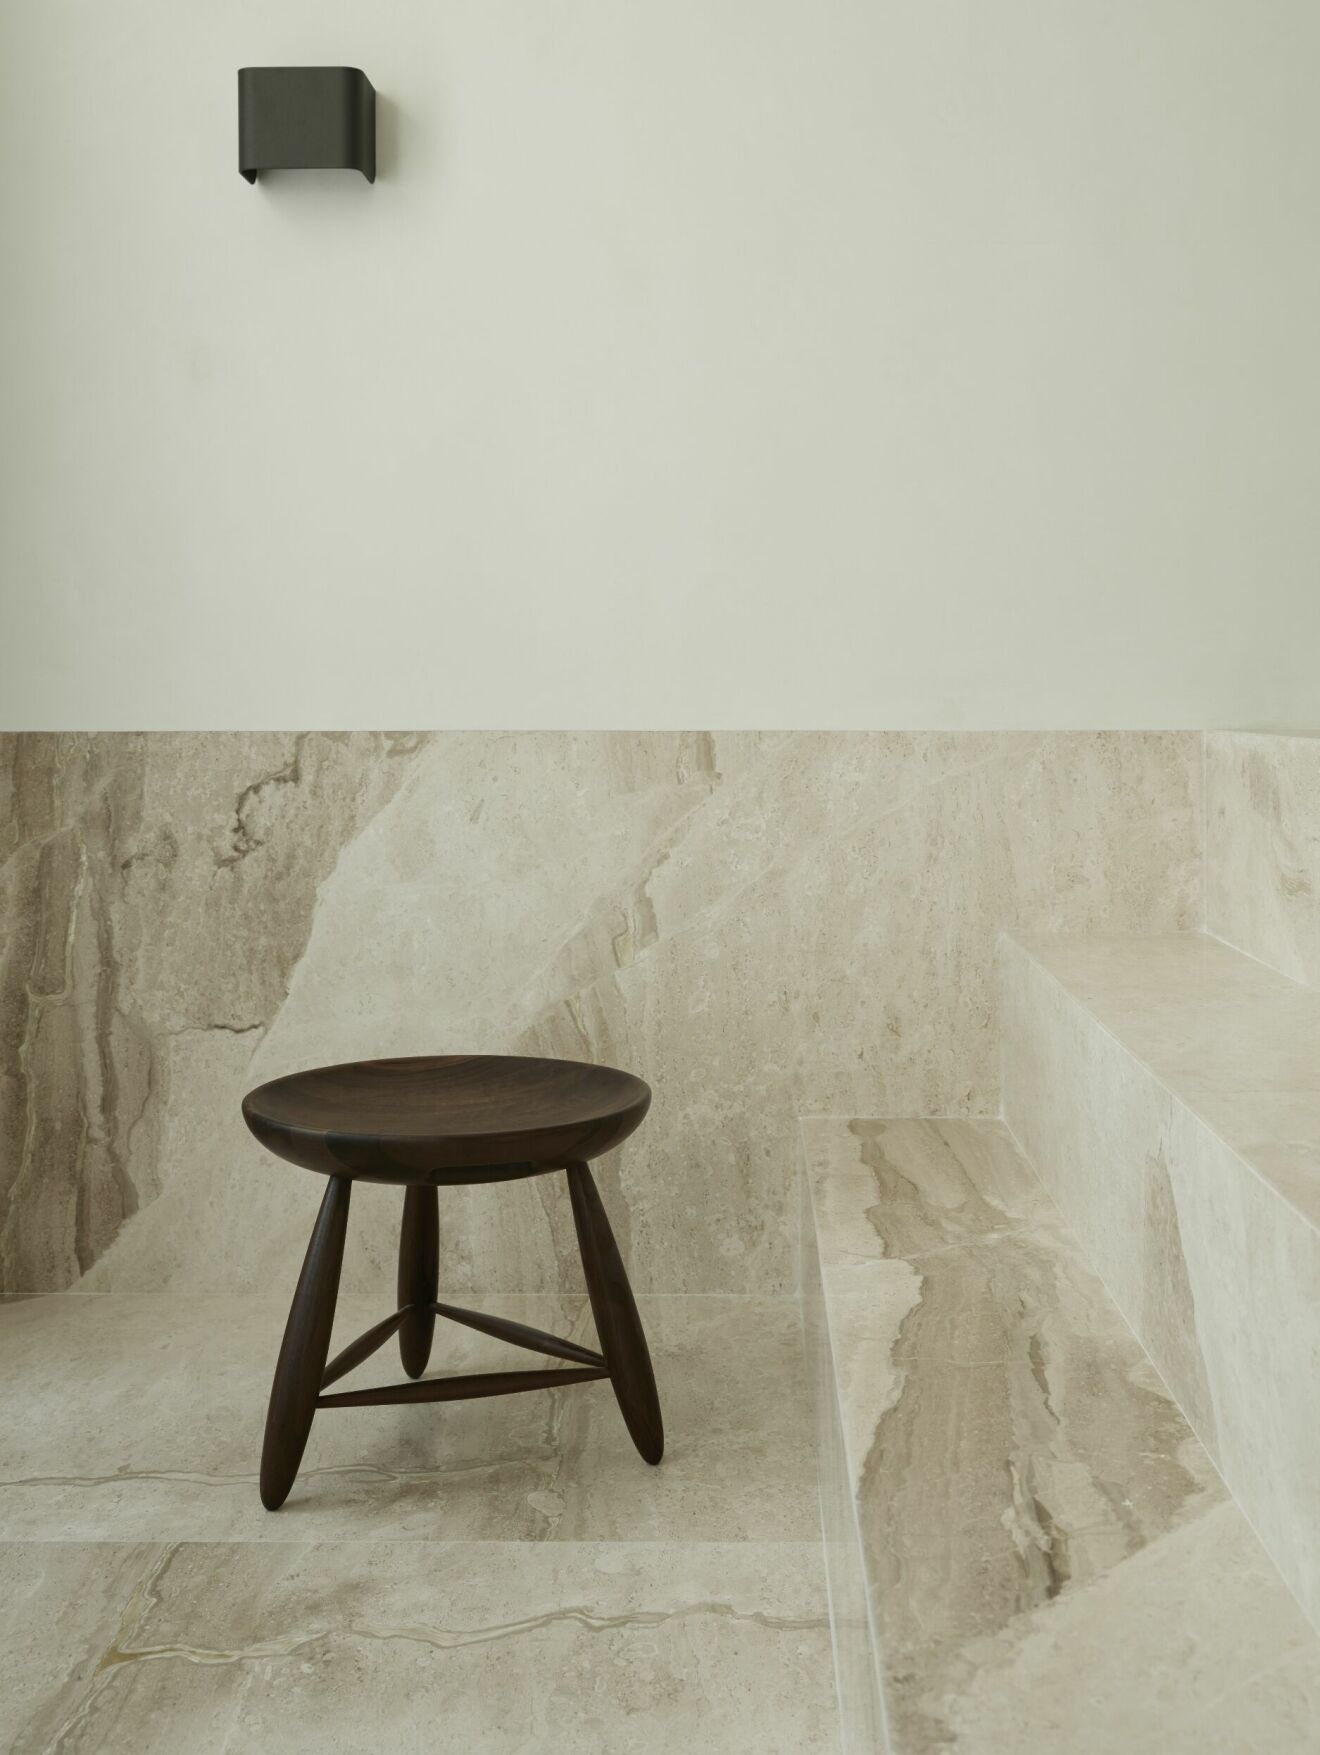 Mini-spa i marmorino och Daino marmor. Väggarmatur Taurus från Belid Lighting och Mocho stool av Sergio Rodrigues för Oca.